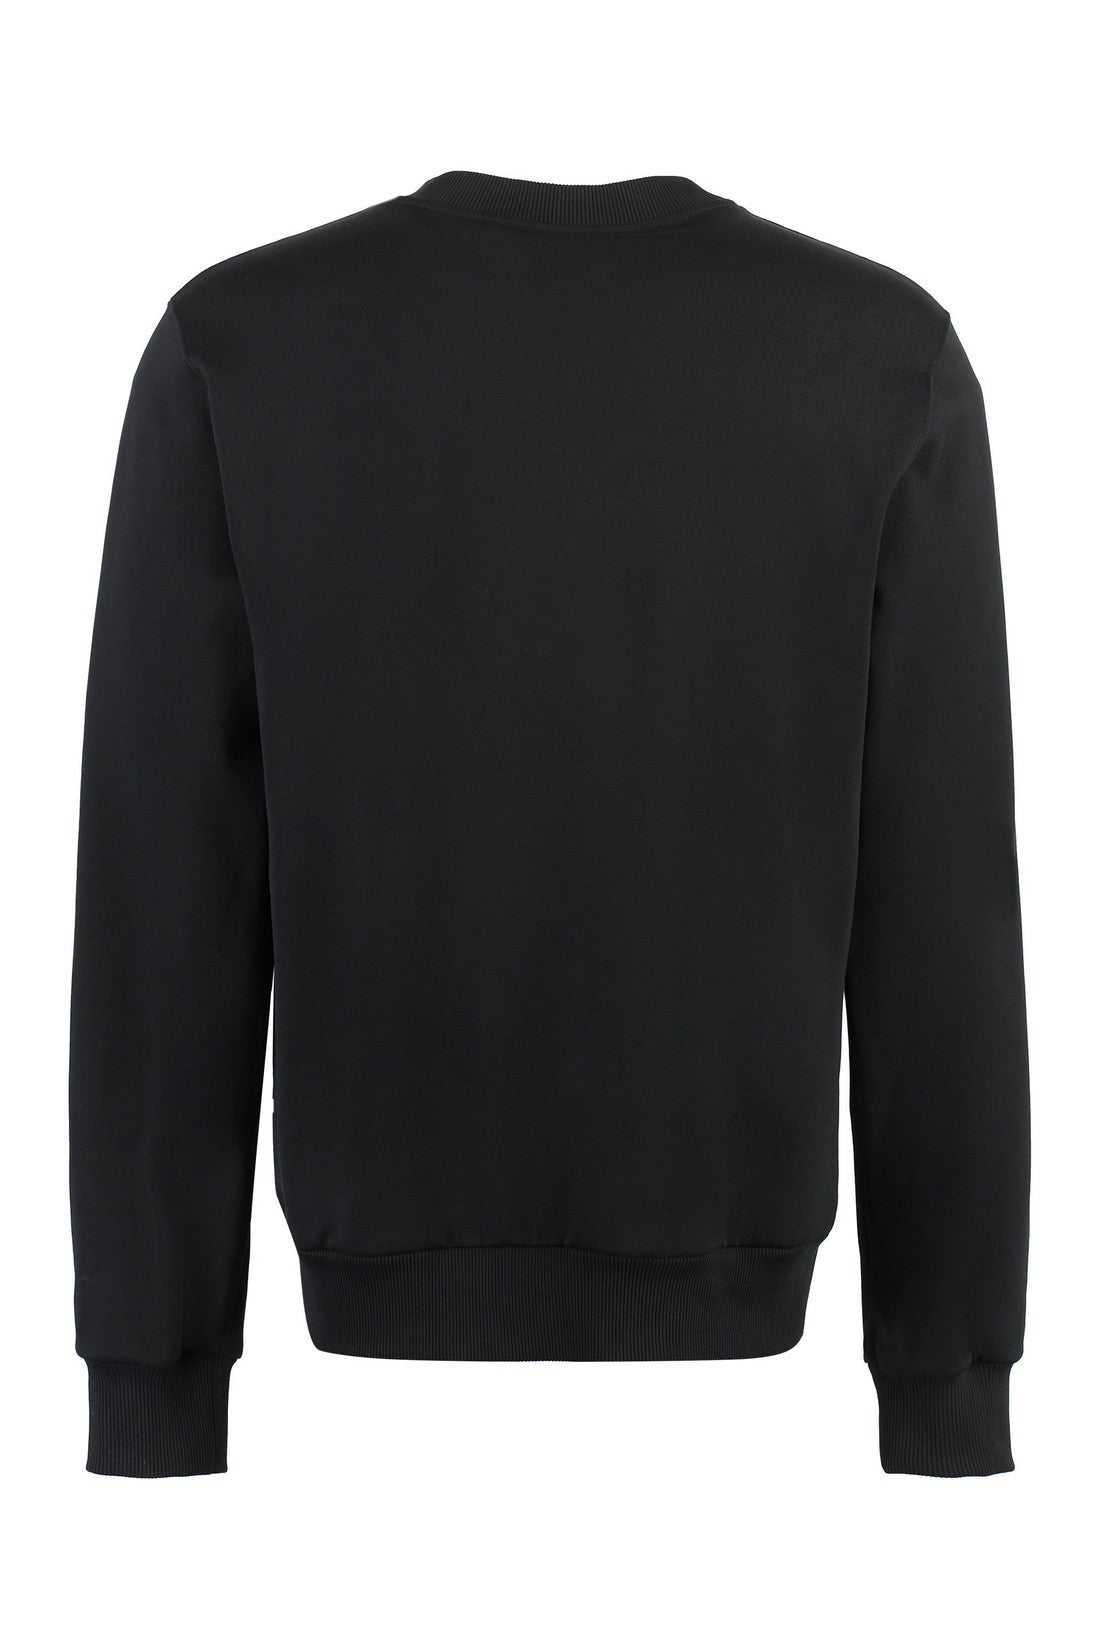 Dolce & Gabbana-OUTLET-SALE-Logo detail cotton sweatshirt-ARCHIVIST